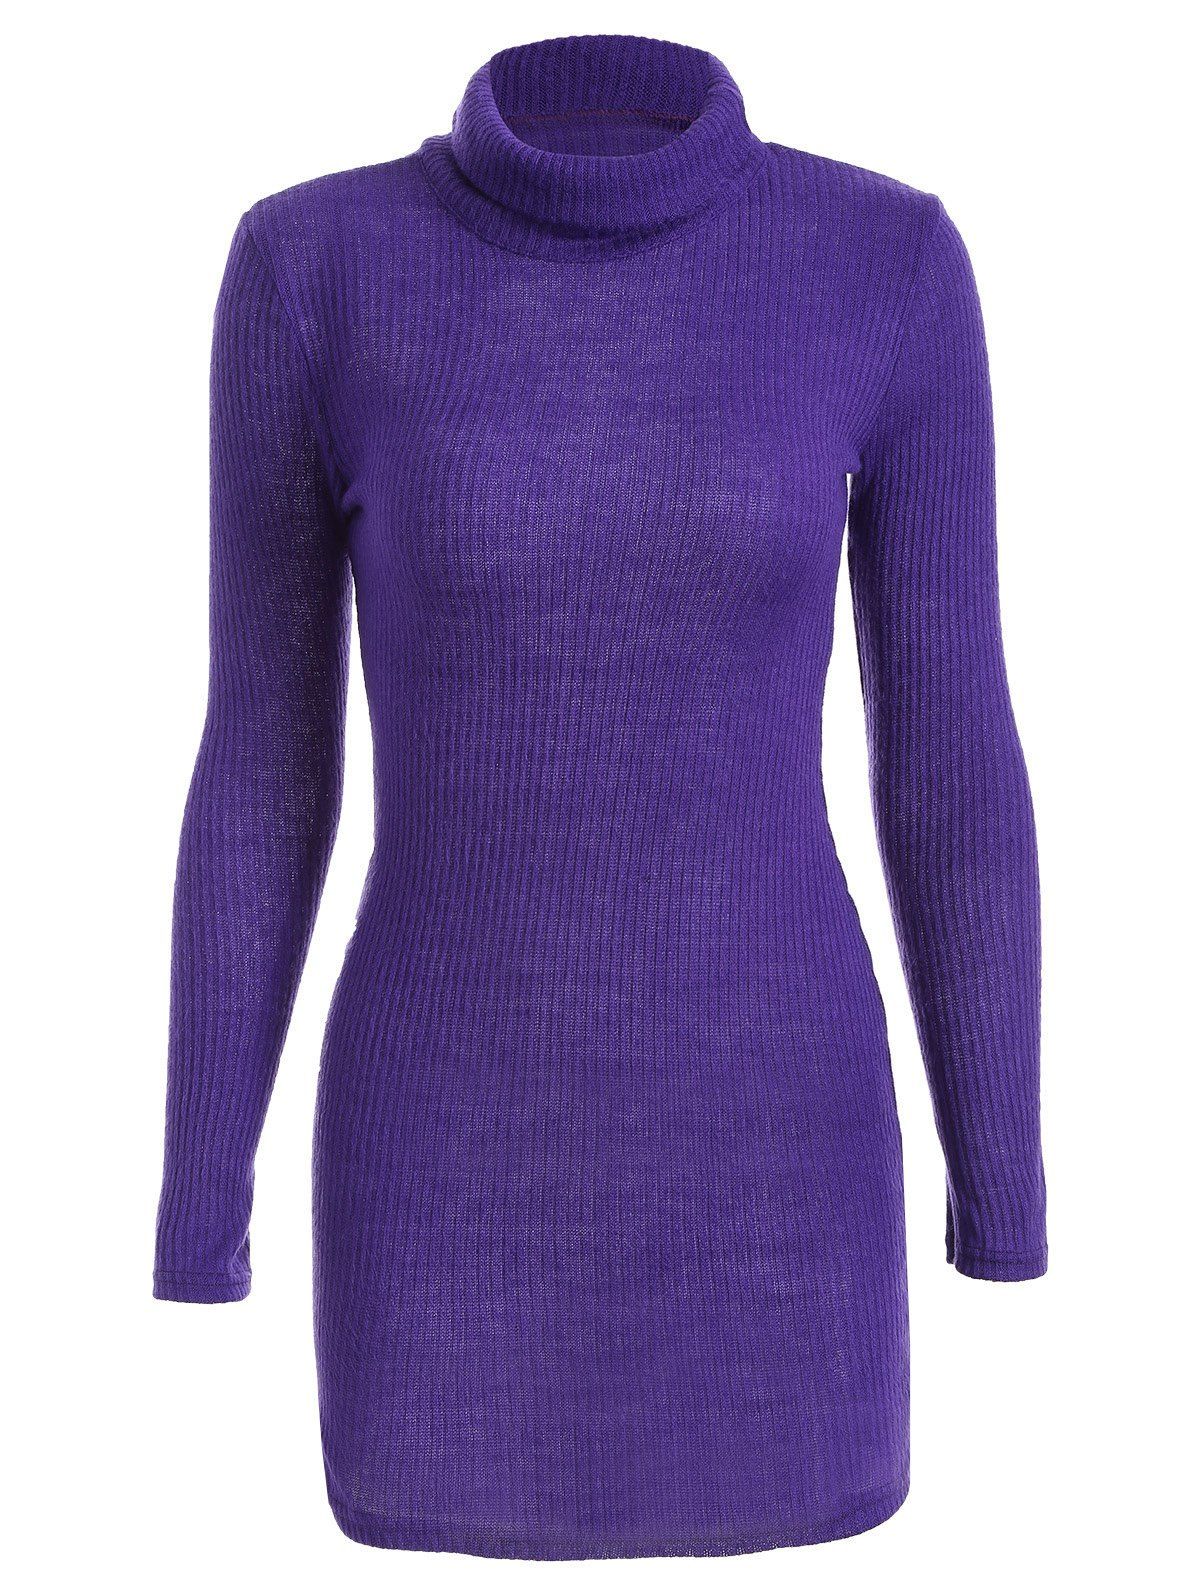 Long Sleeve Turtleneck Bodycon Sweater Dress, PURPLE, S in Sweater ...